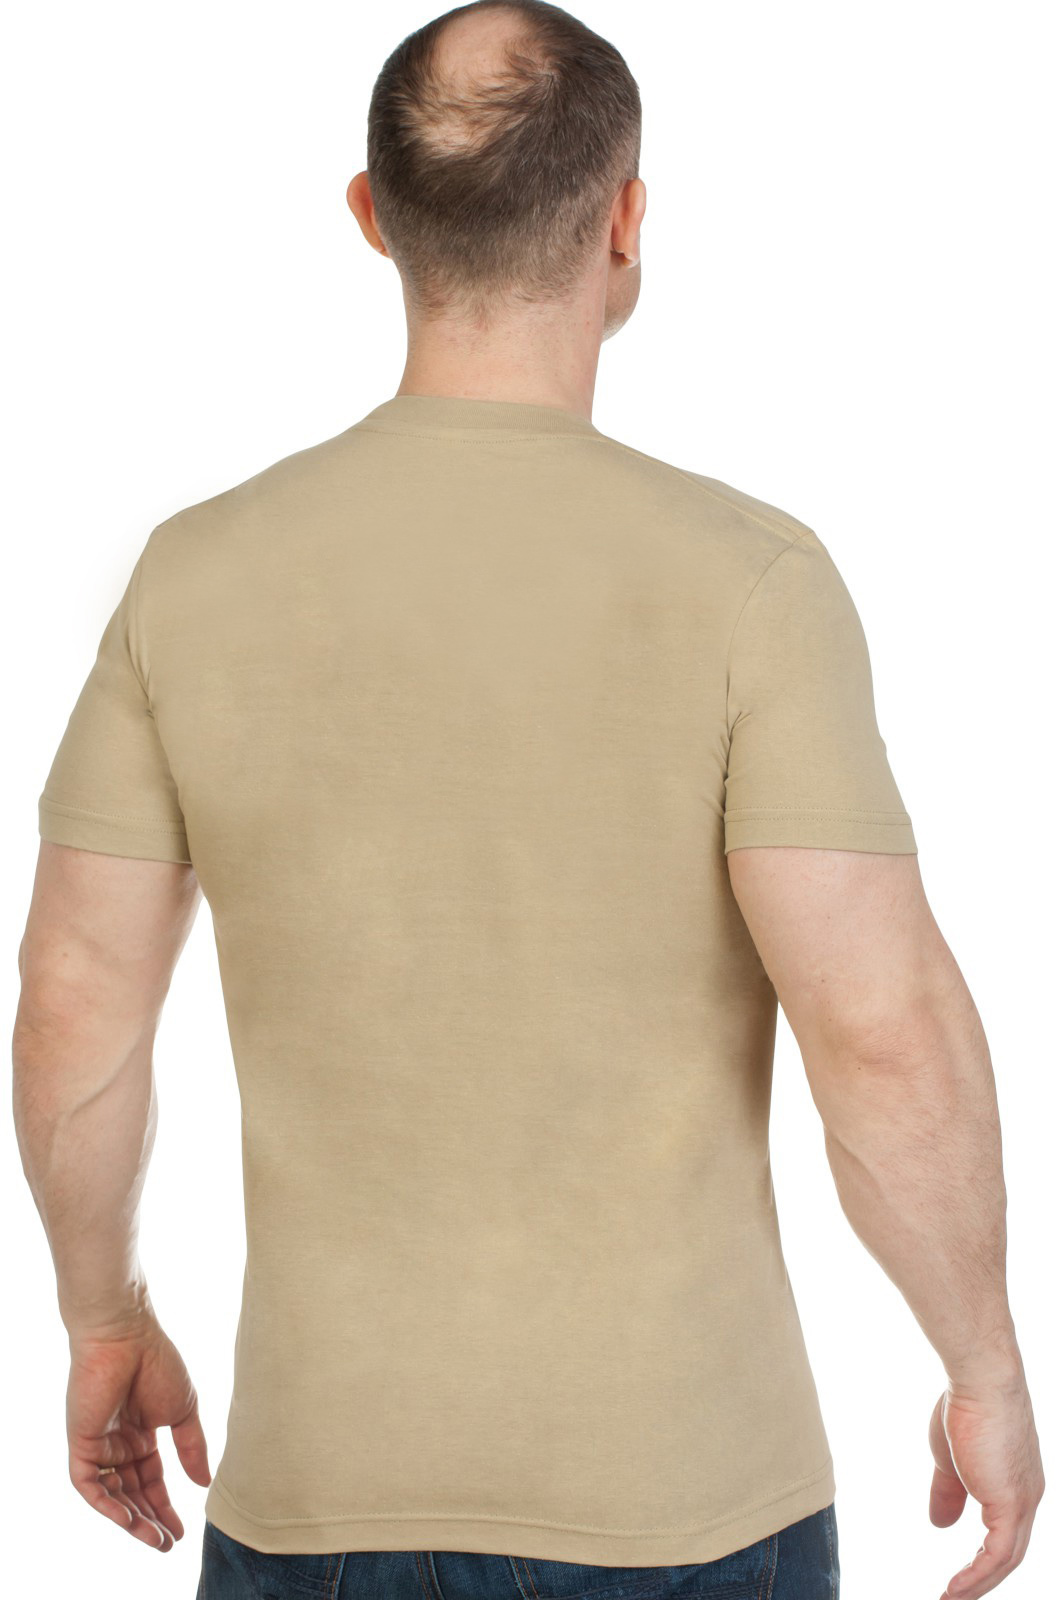 Купить надежную мужскую футболку с вышивкой полевой Каратель с доставкой выгодно